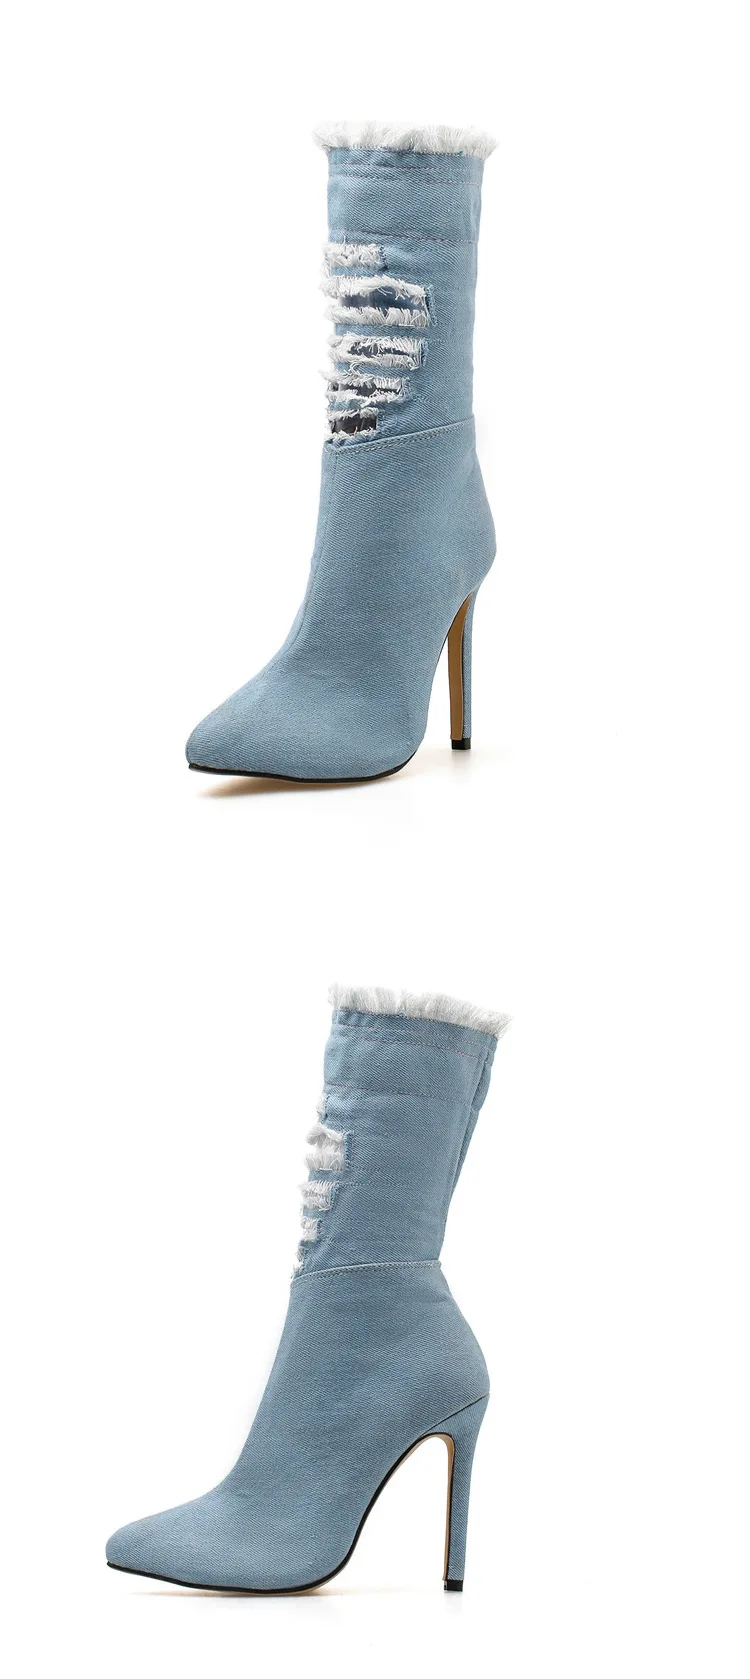 LTARTA/обувь; женские пикантные сапоги до середины икры с острым носком на каблуке; Осенняя обувь; узкие джинсы с дырками на молнии сбоку; ZL-668-1